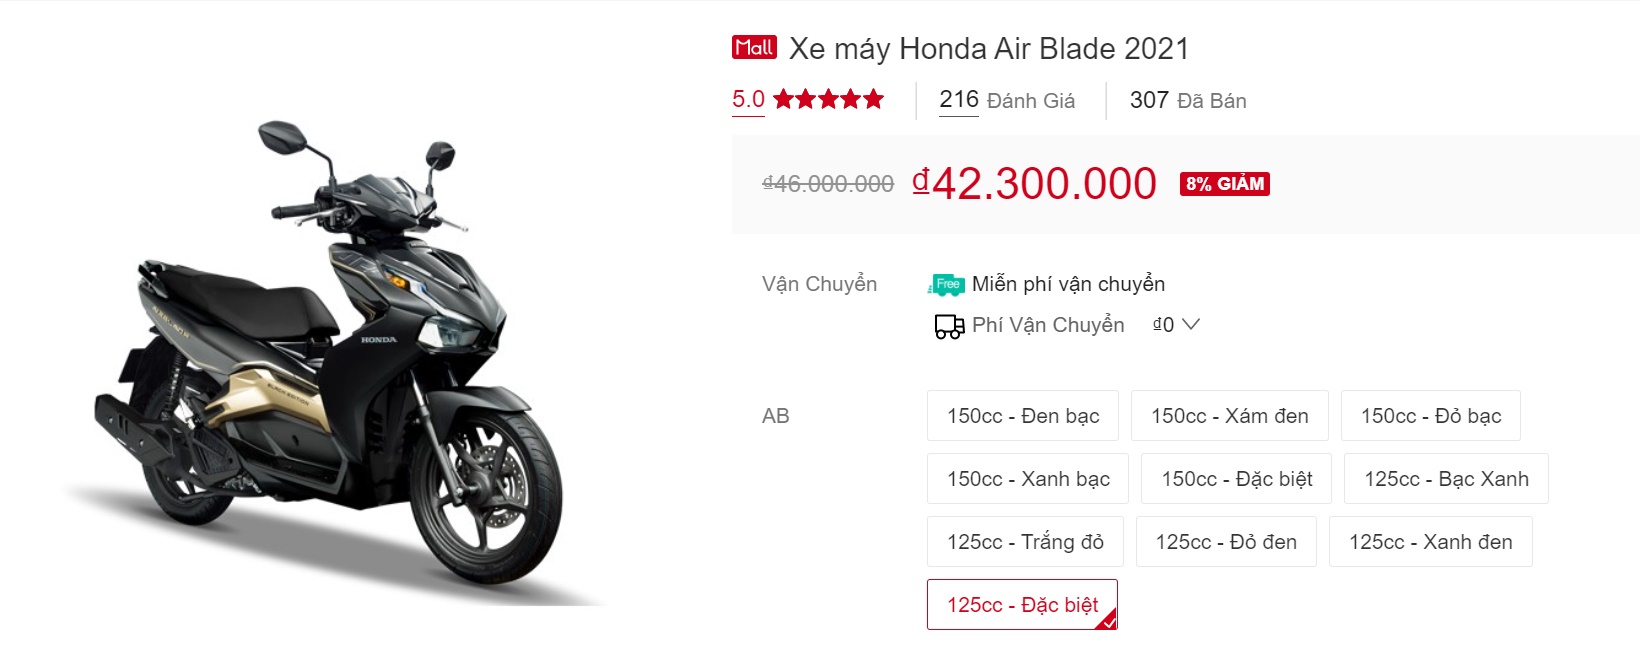 Giá xe Honda Air Blade hạ sâu chạm đáy, rẻ nhất chỉ 41 triệu cạnh tranh Yamaha NVX cực gắt ảnh 1